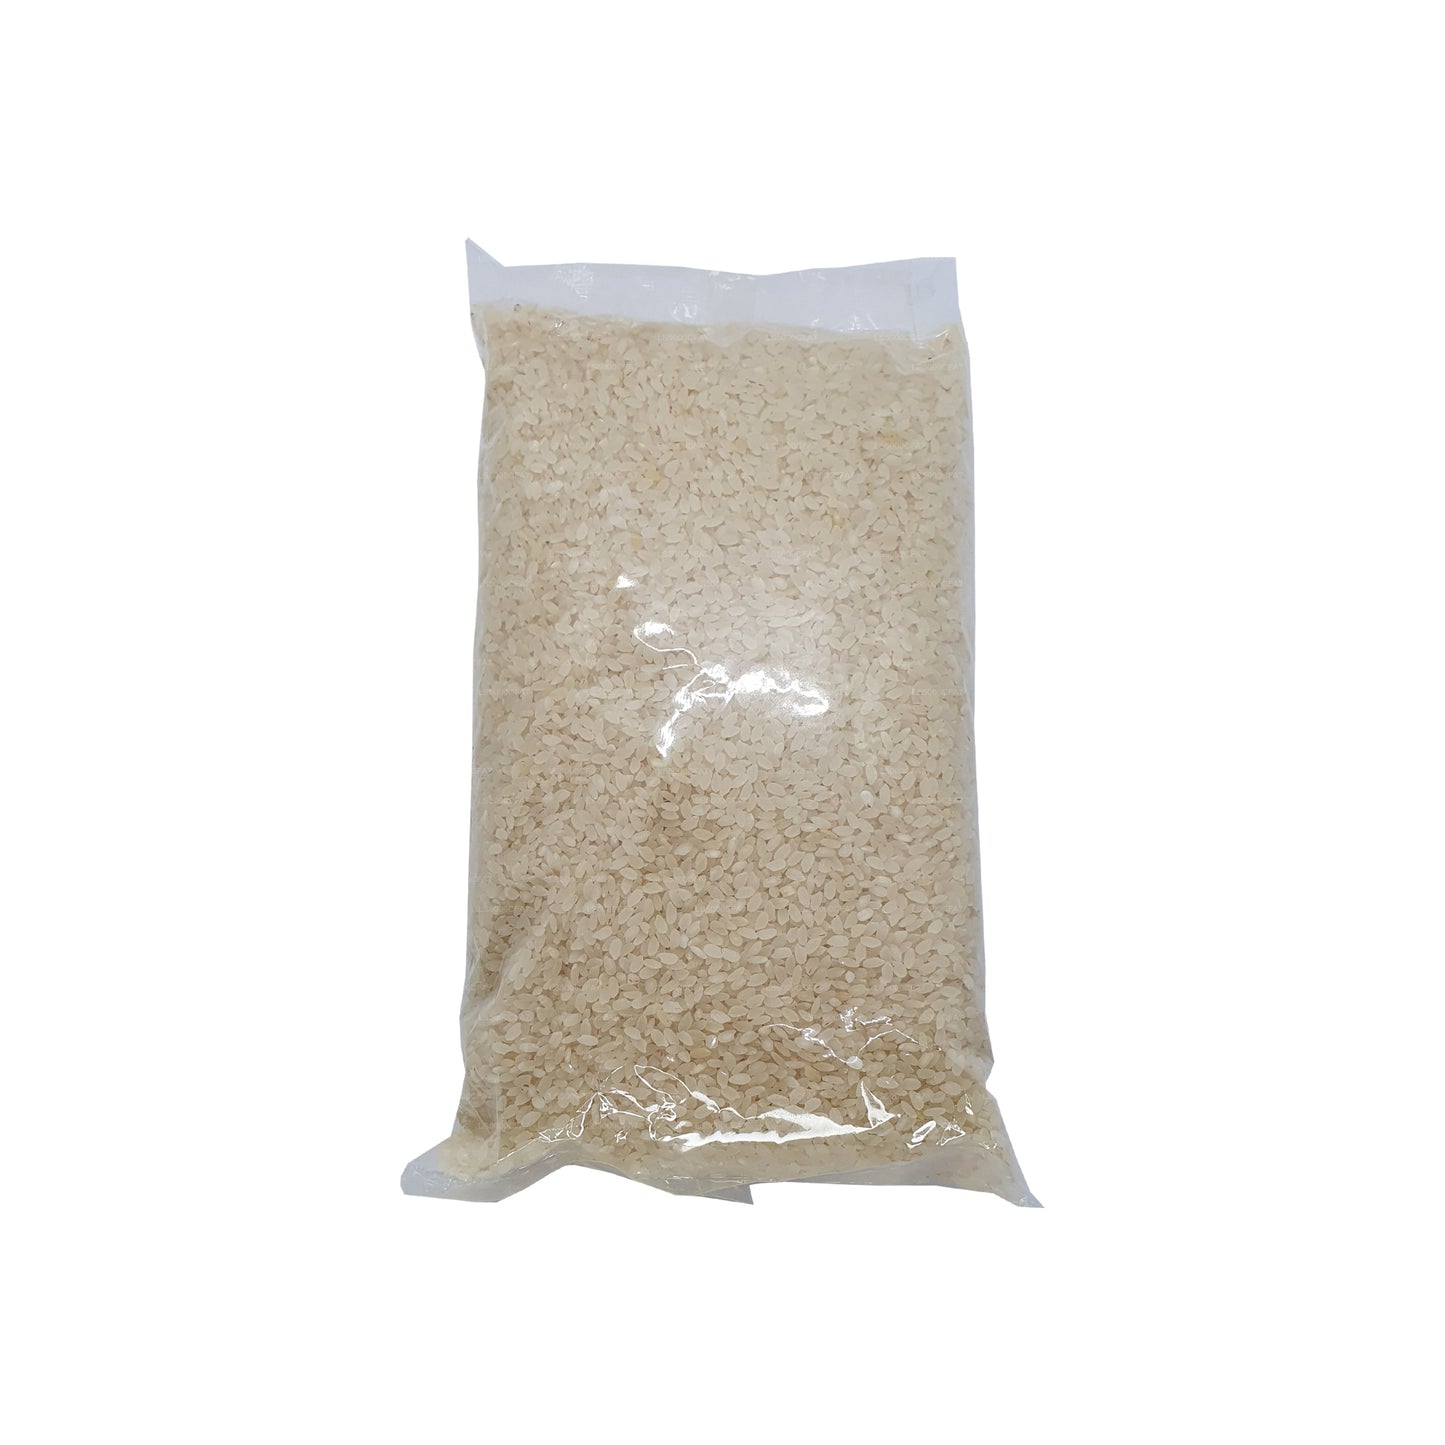 vCeylon Maa Wee Rice (3kg)